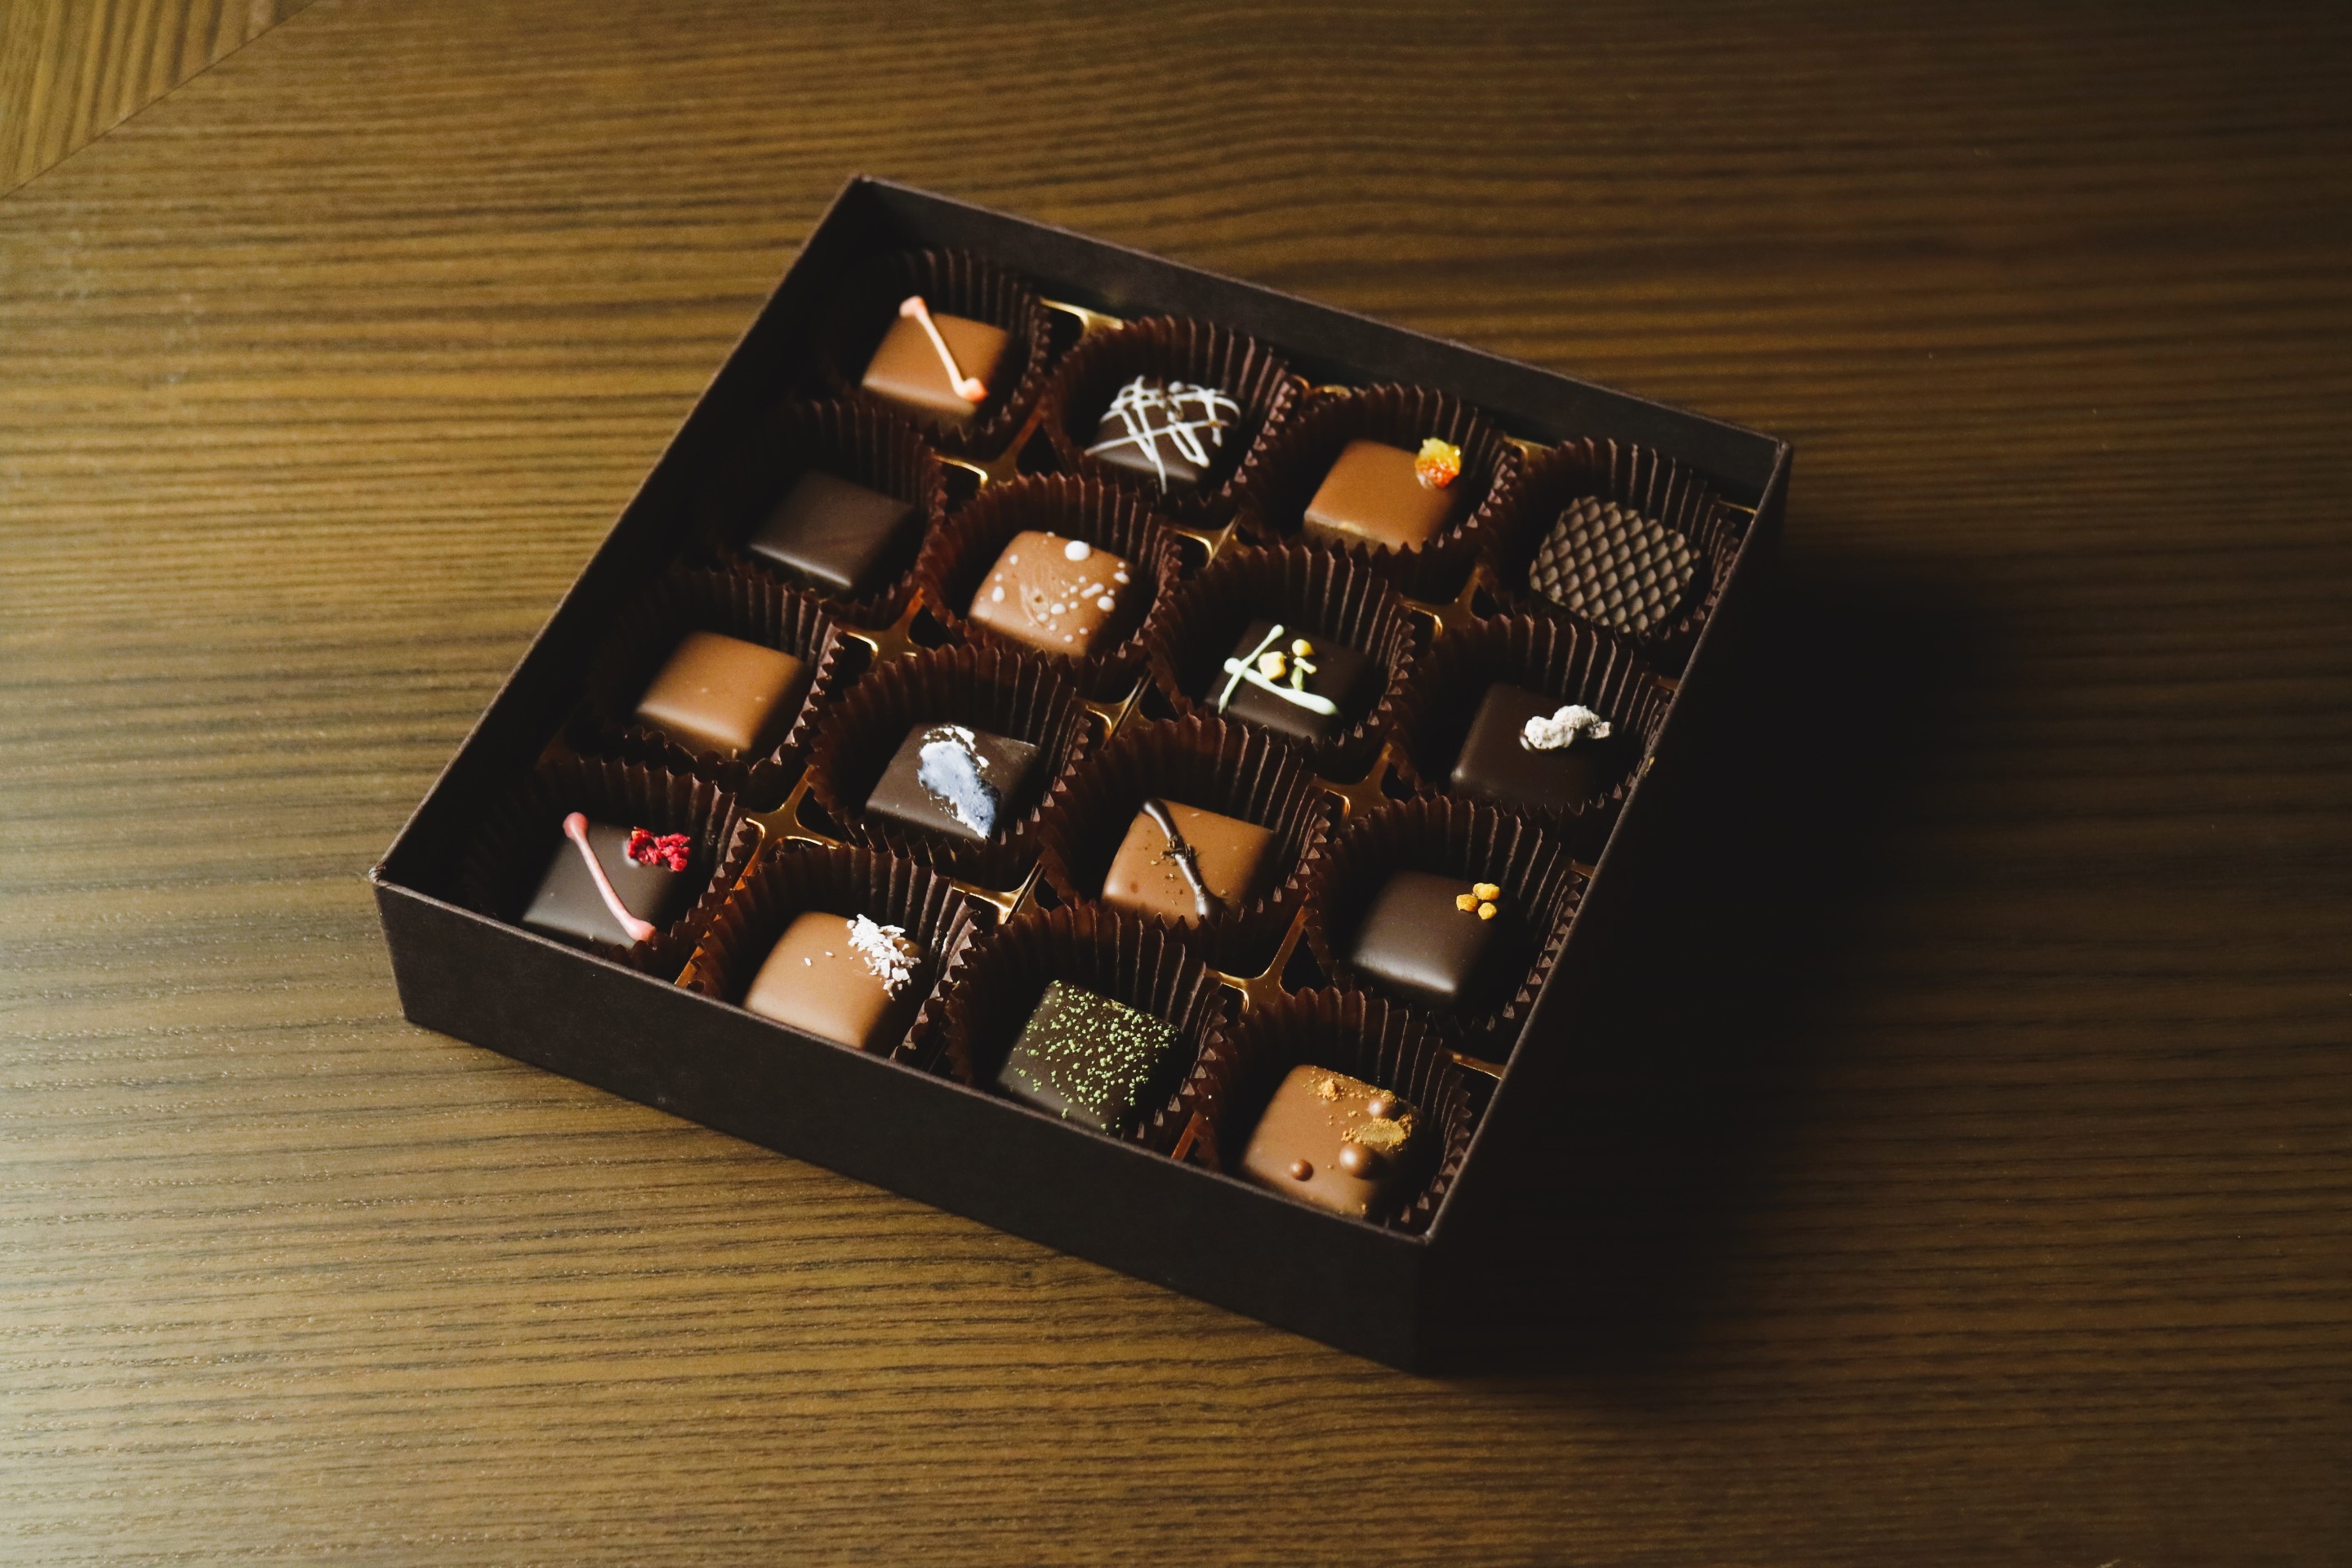 バレンタインに向け、海老名のチョコレート工房が
地元素材を使用した16種のボンボンショコラを発売